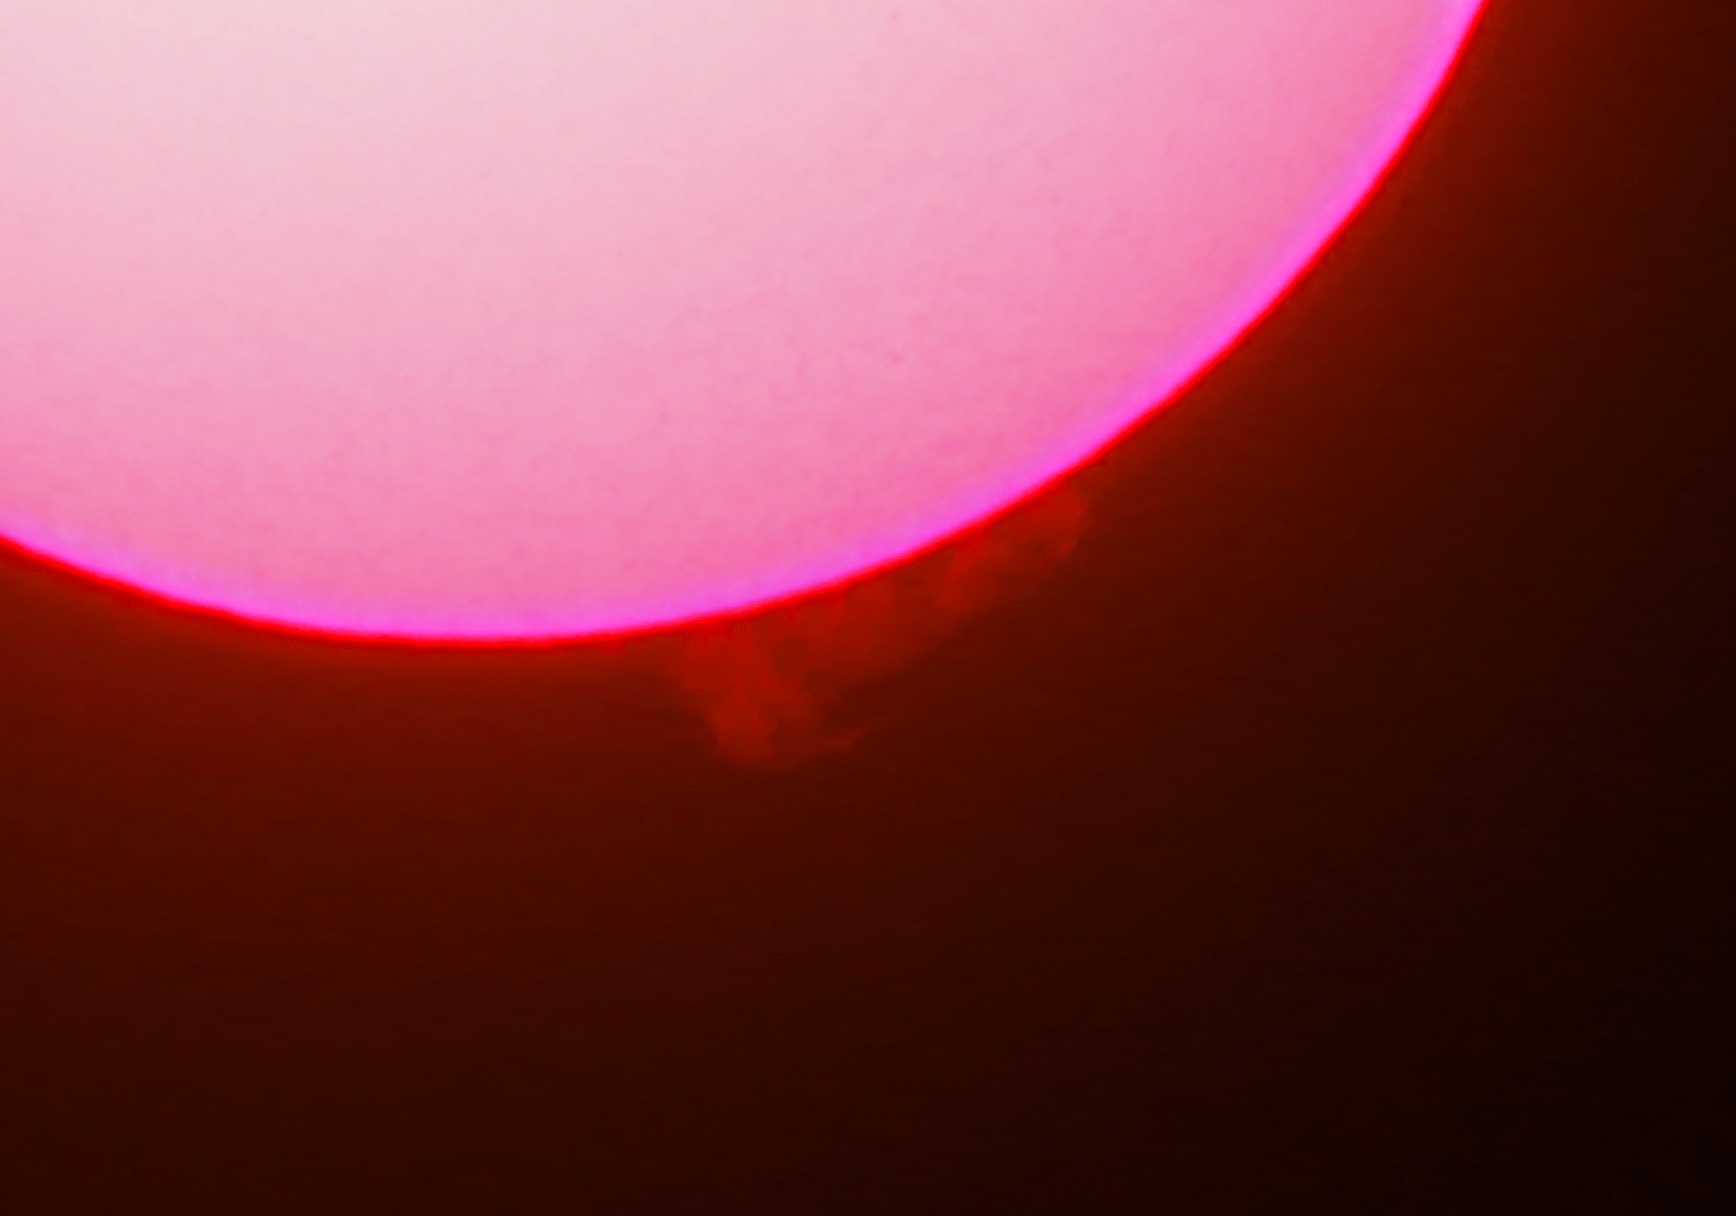 2015.04.24 오전 9시 20분쯤의 태양.jpg